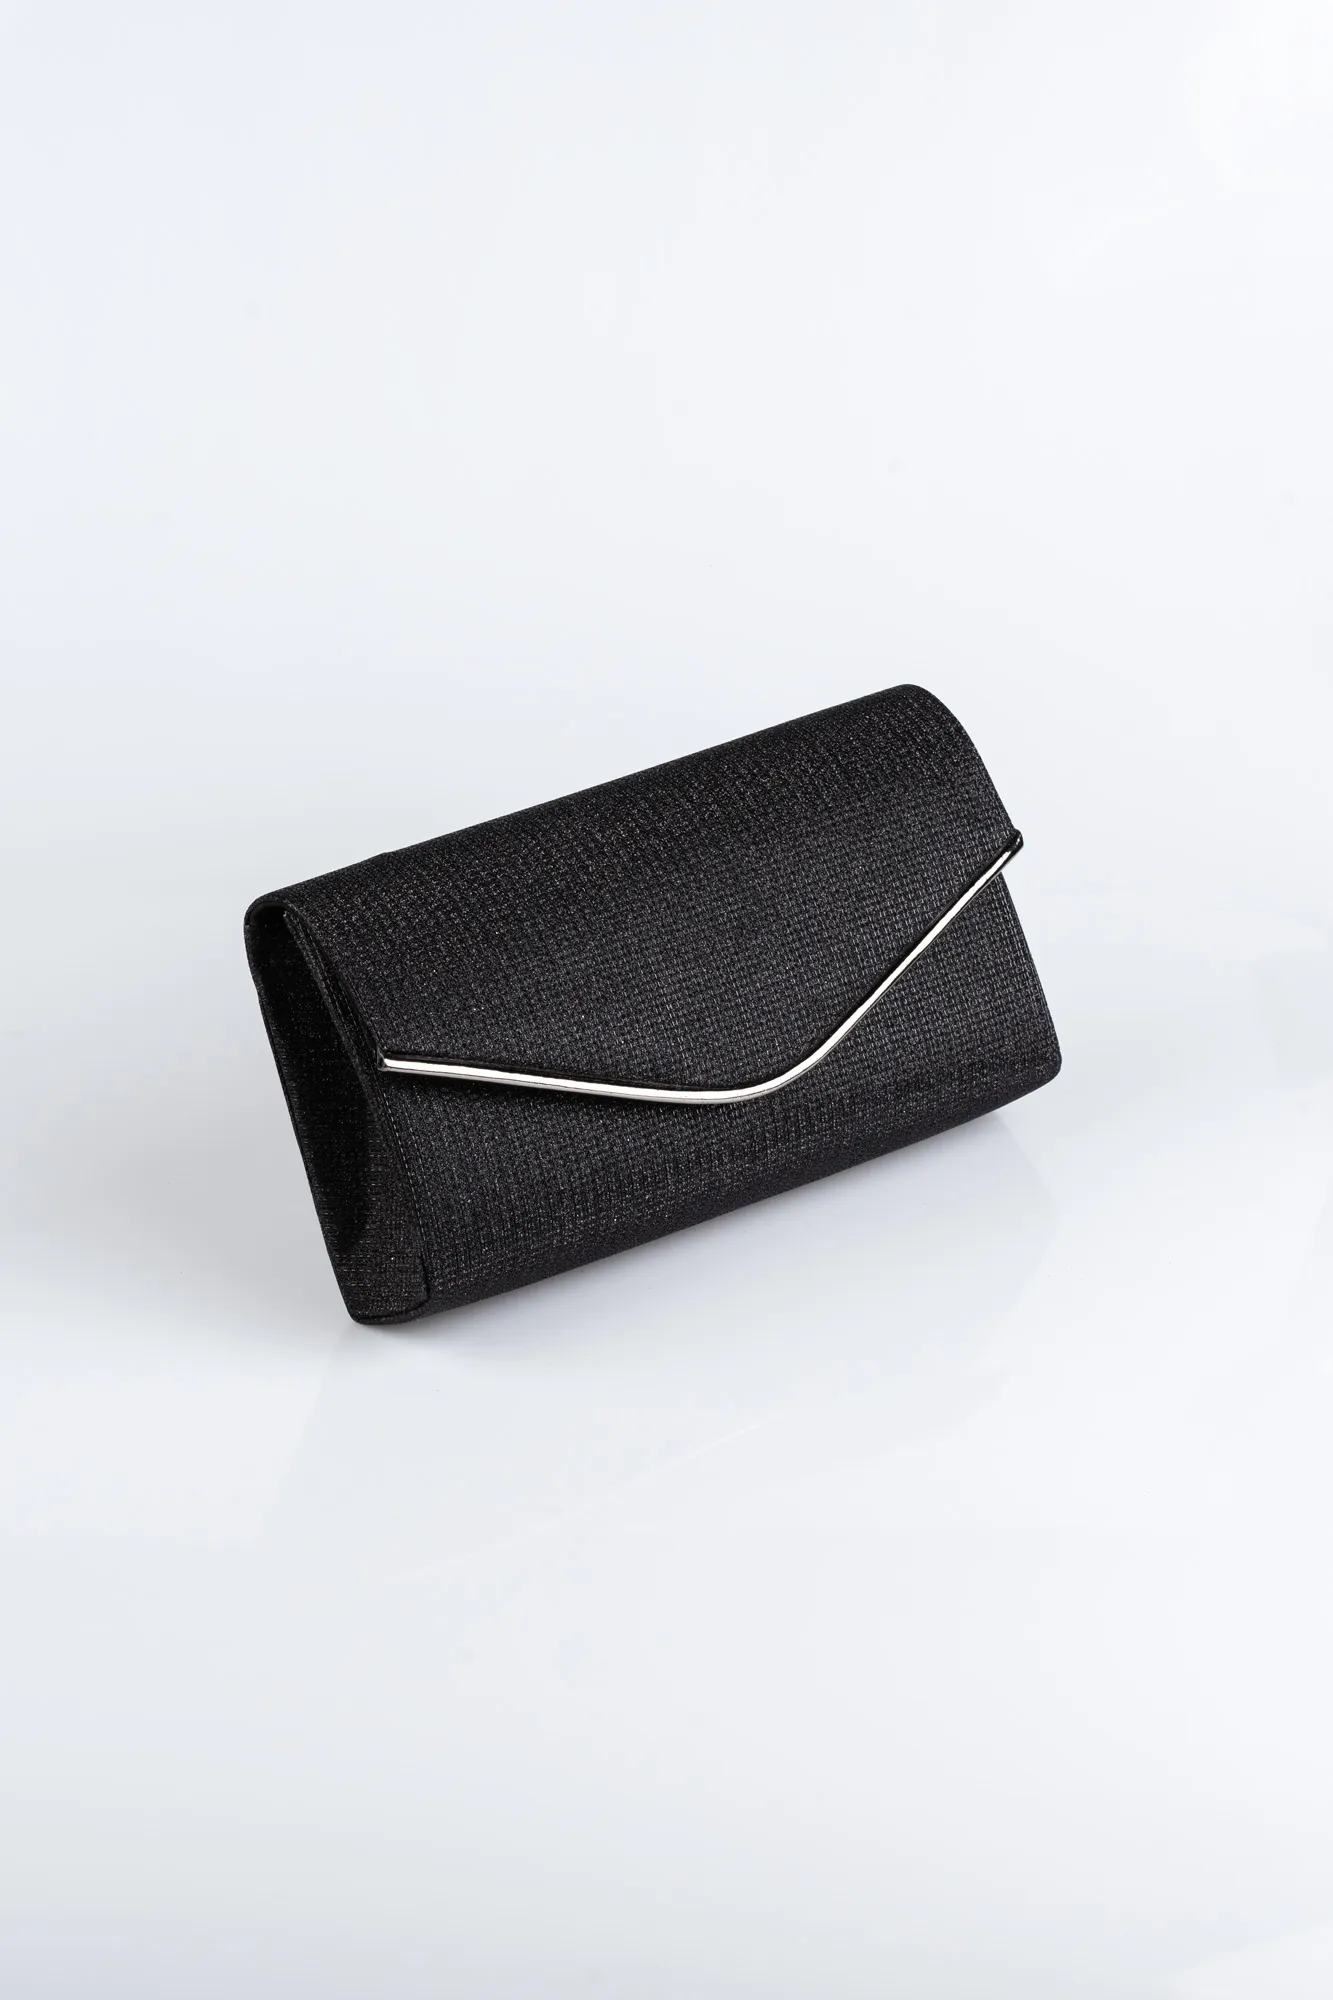 Black-Silver-Silvery Envelope Bag SH810